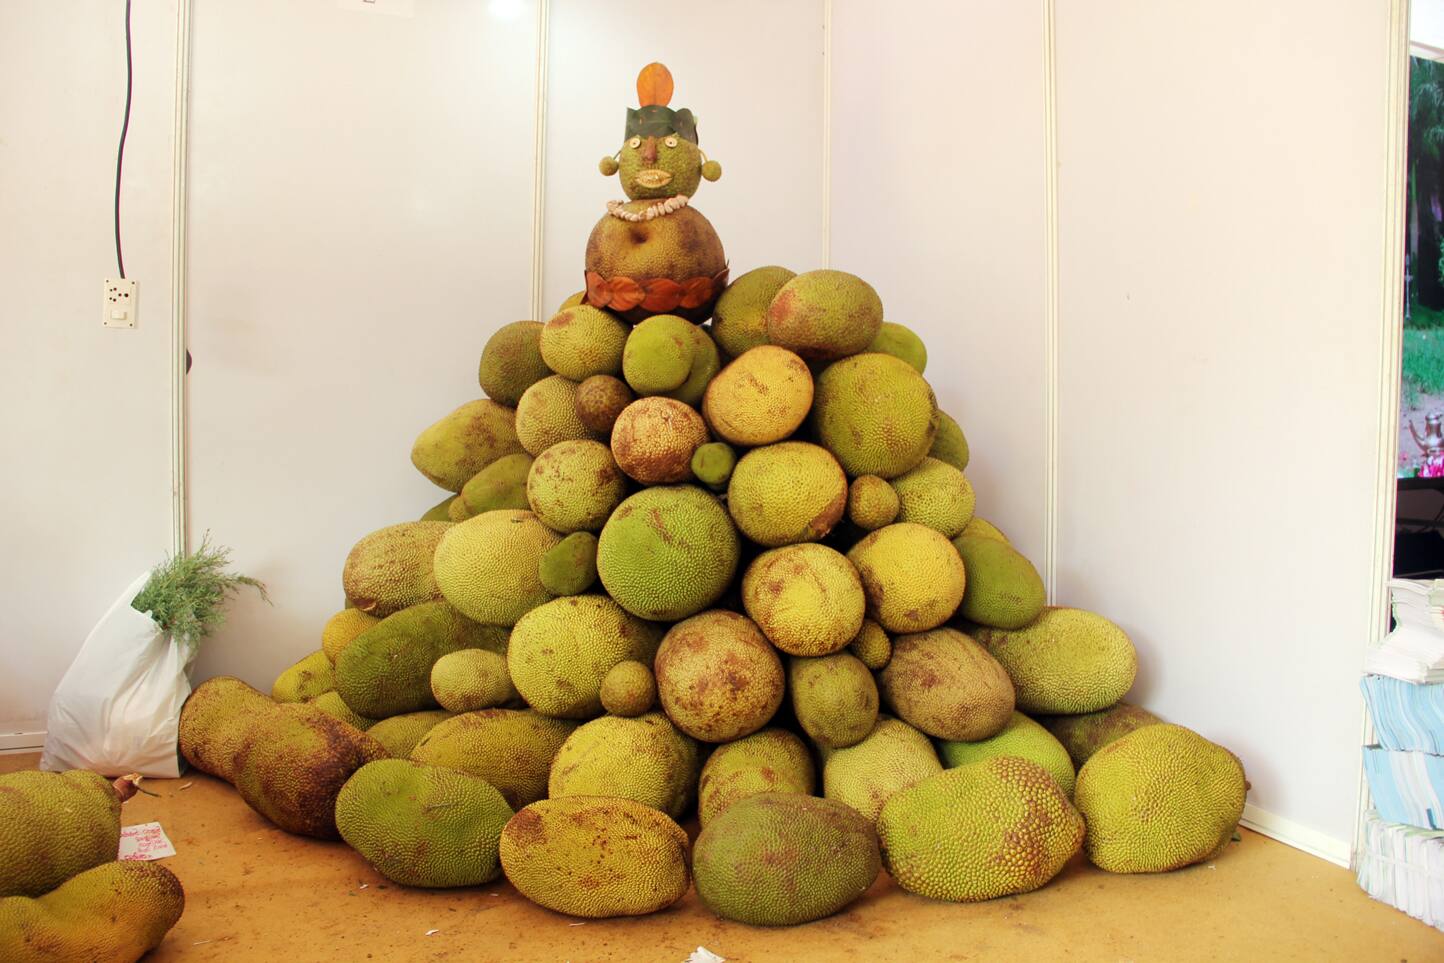 Jackfruit festival in Thrissur